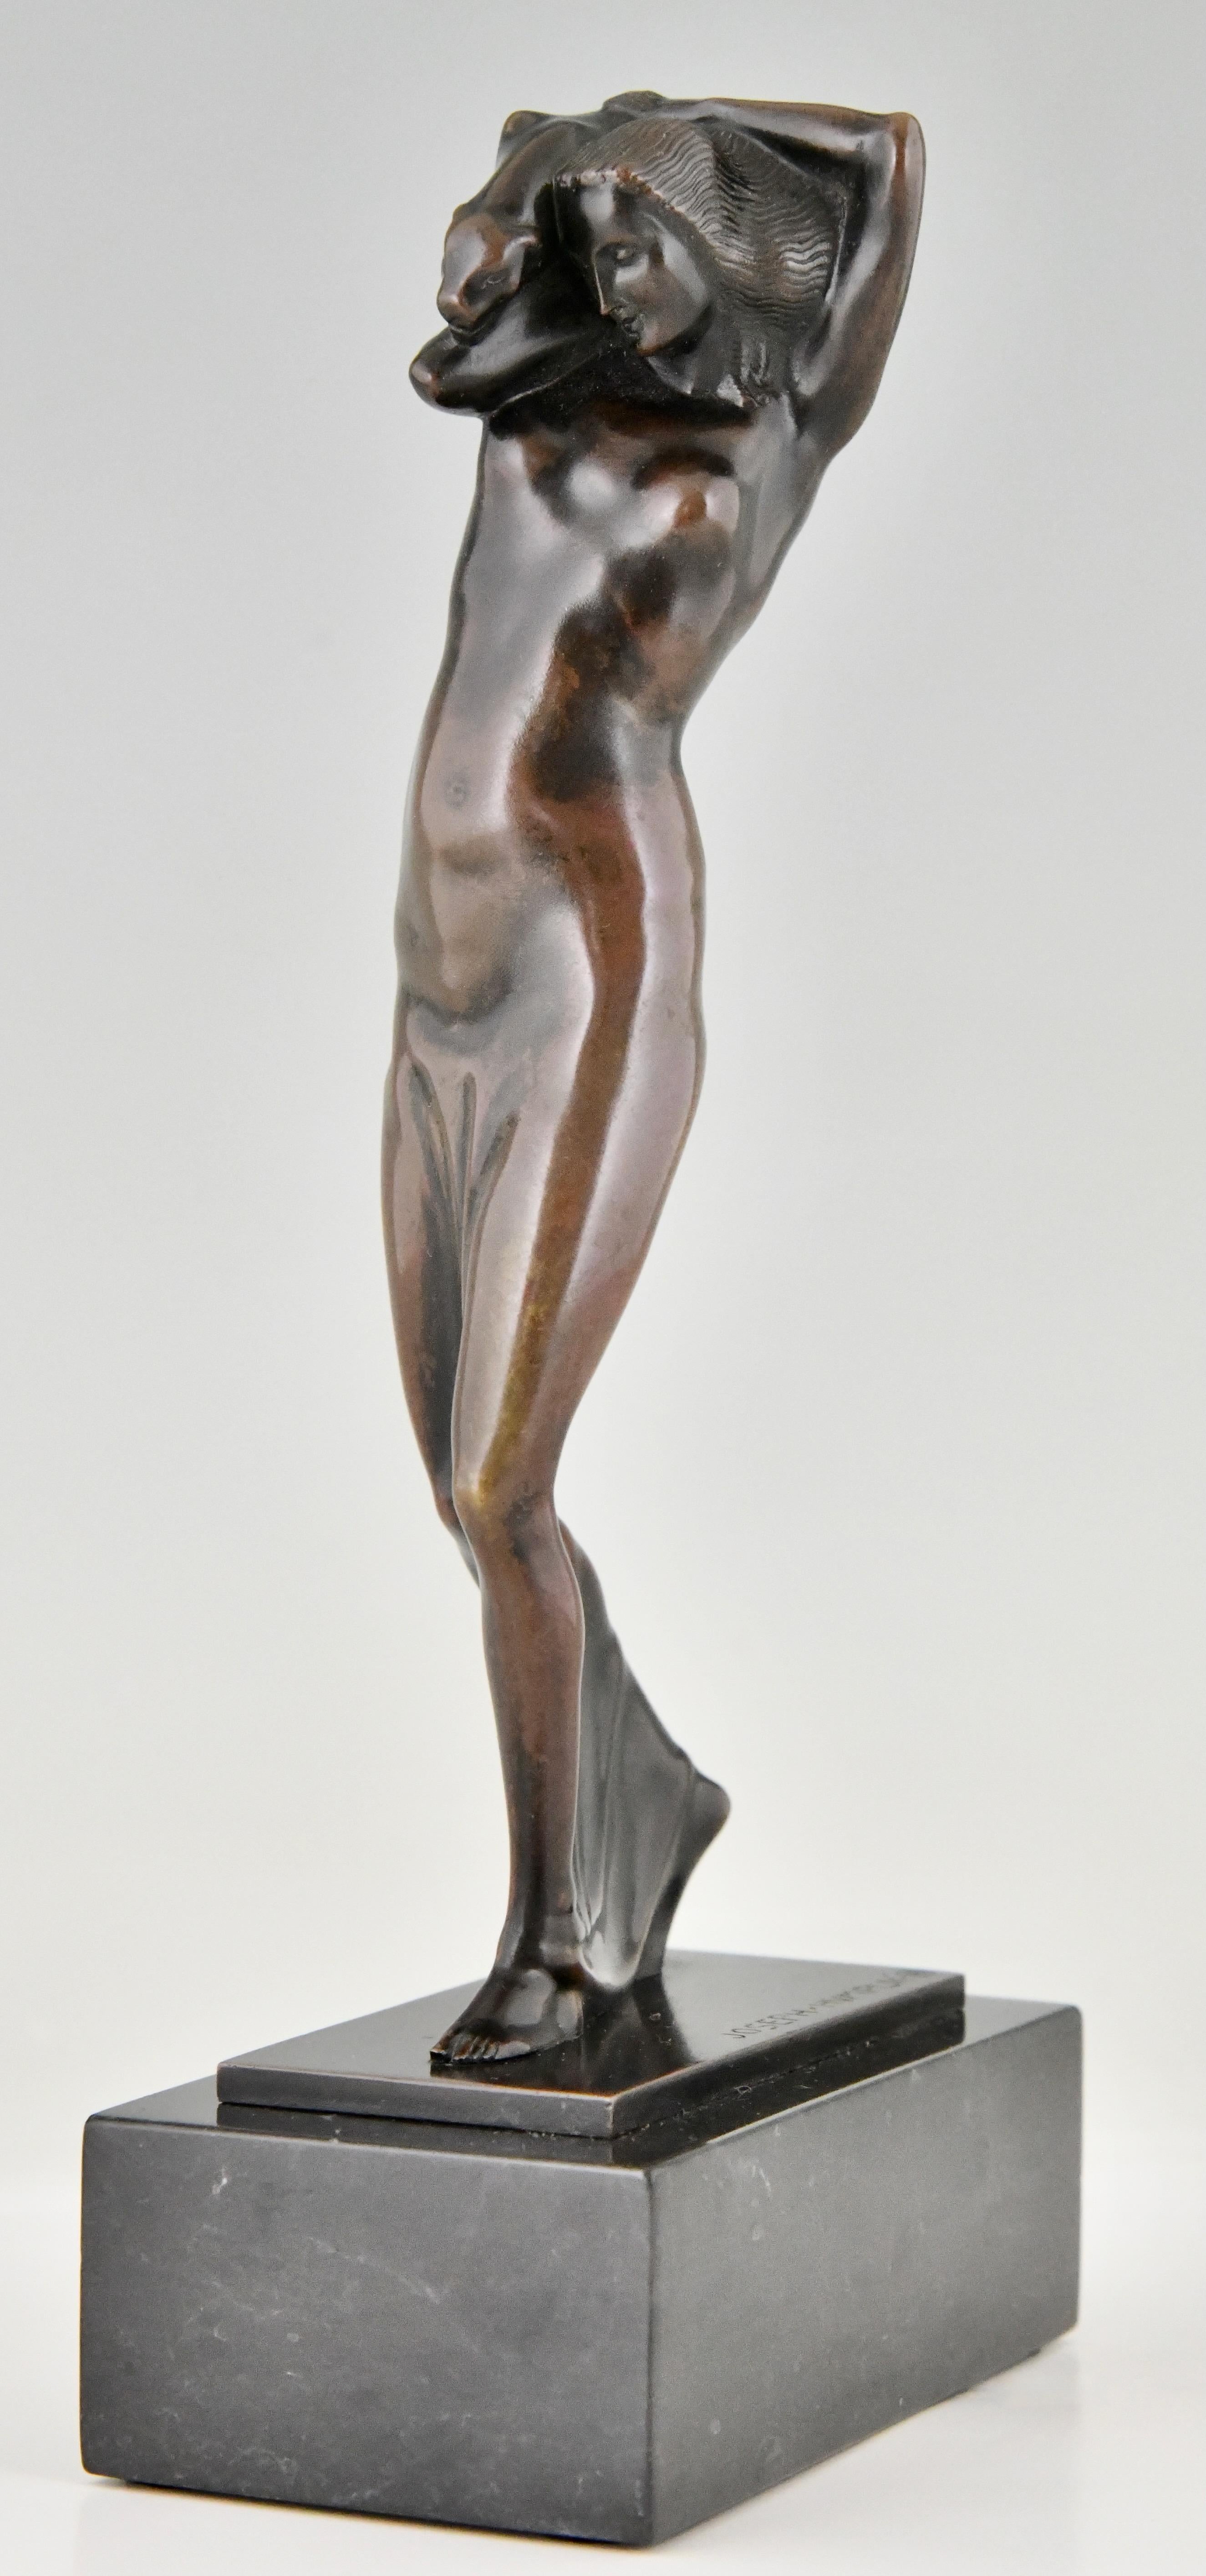 Sculpture en bronze Art Nouveau, dame avec panthère par Joseph Humplik
AR Fonderie Arthur Rubinstein, Vienne. 
Bronze patiné sur socle en marbre noir. 
Autriche 1910. 